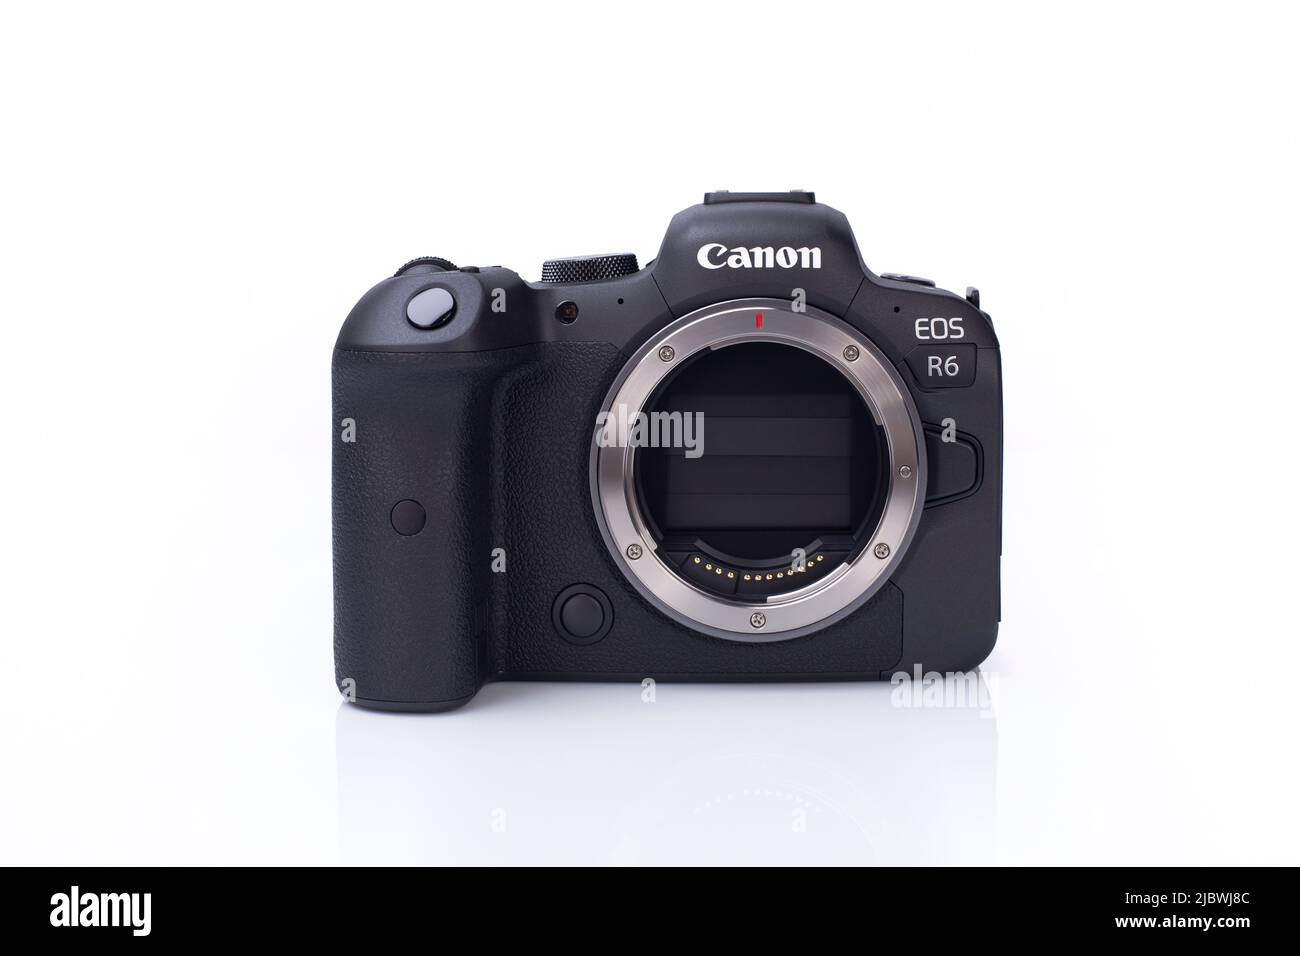 Galati, Rumänien - 12. Oktober 2021: Wenn die Kamera Canon EOS R6 ausgeschaltet ist, schließt sich der Verschluss, um den Sensor vor Staub zu schützen. Canon R6 Vollformatsensor ohne Mirrorless Stockfoto